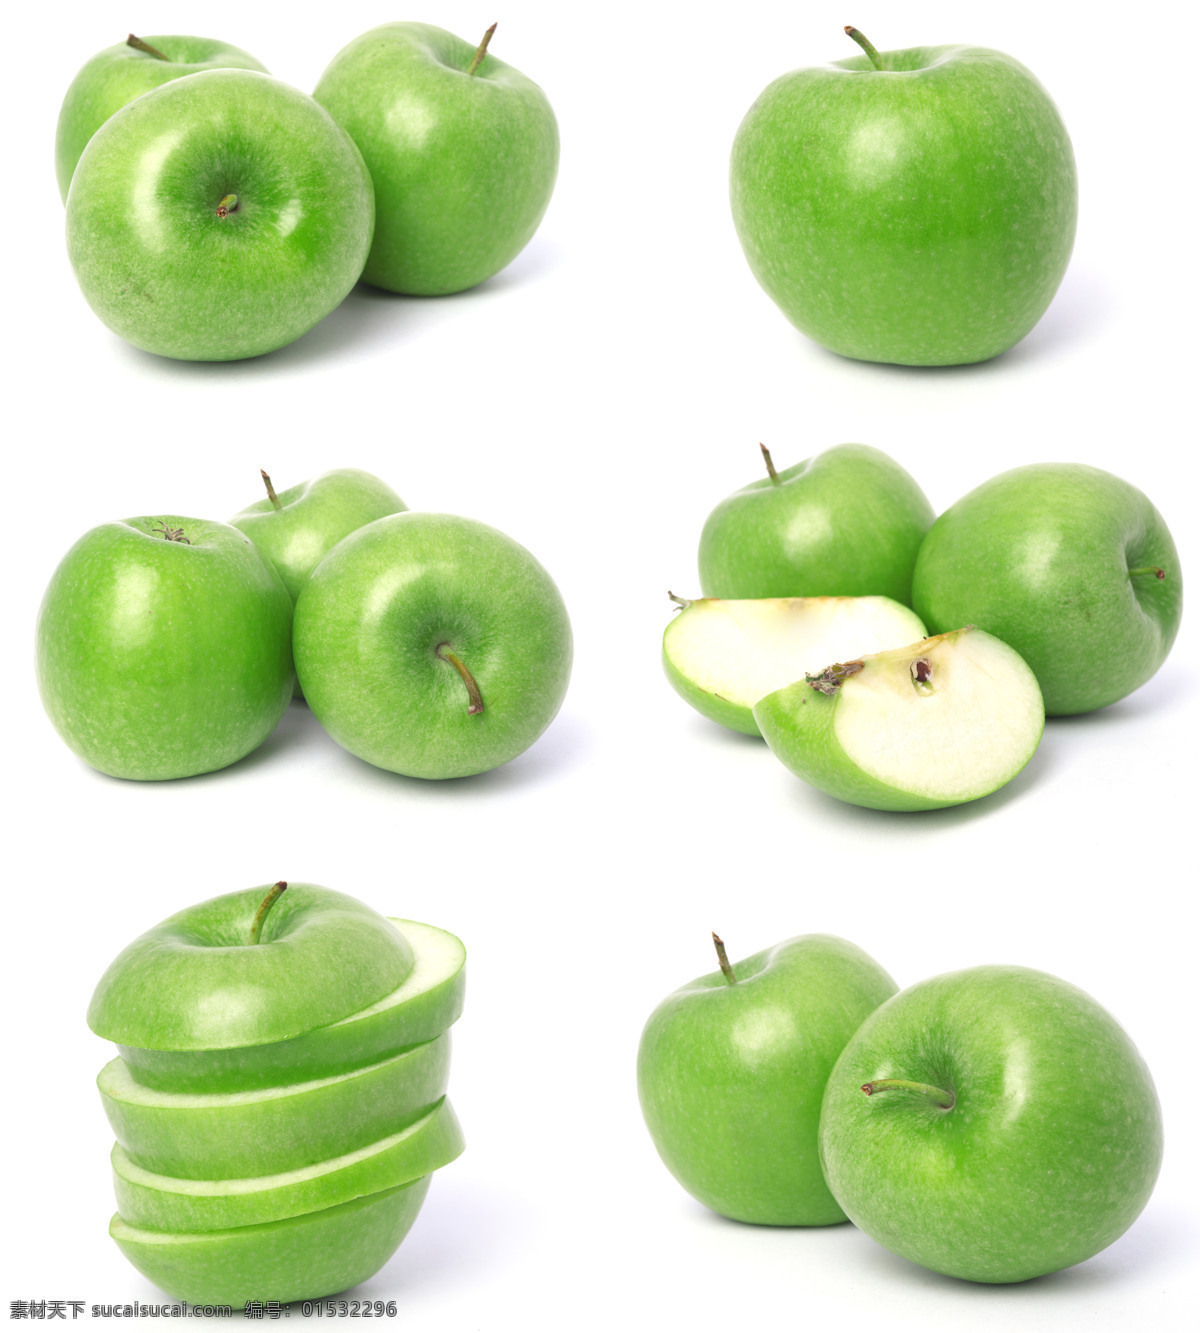 青苹果 食物 水果 新鲜 苹果图片 餐饮美食